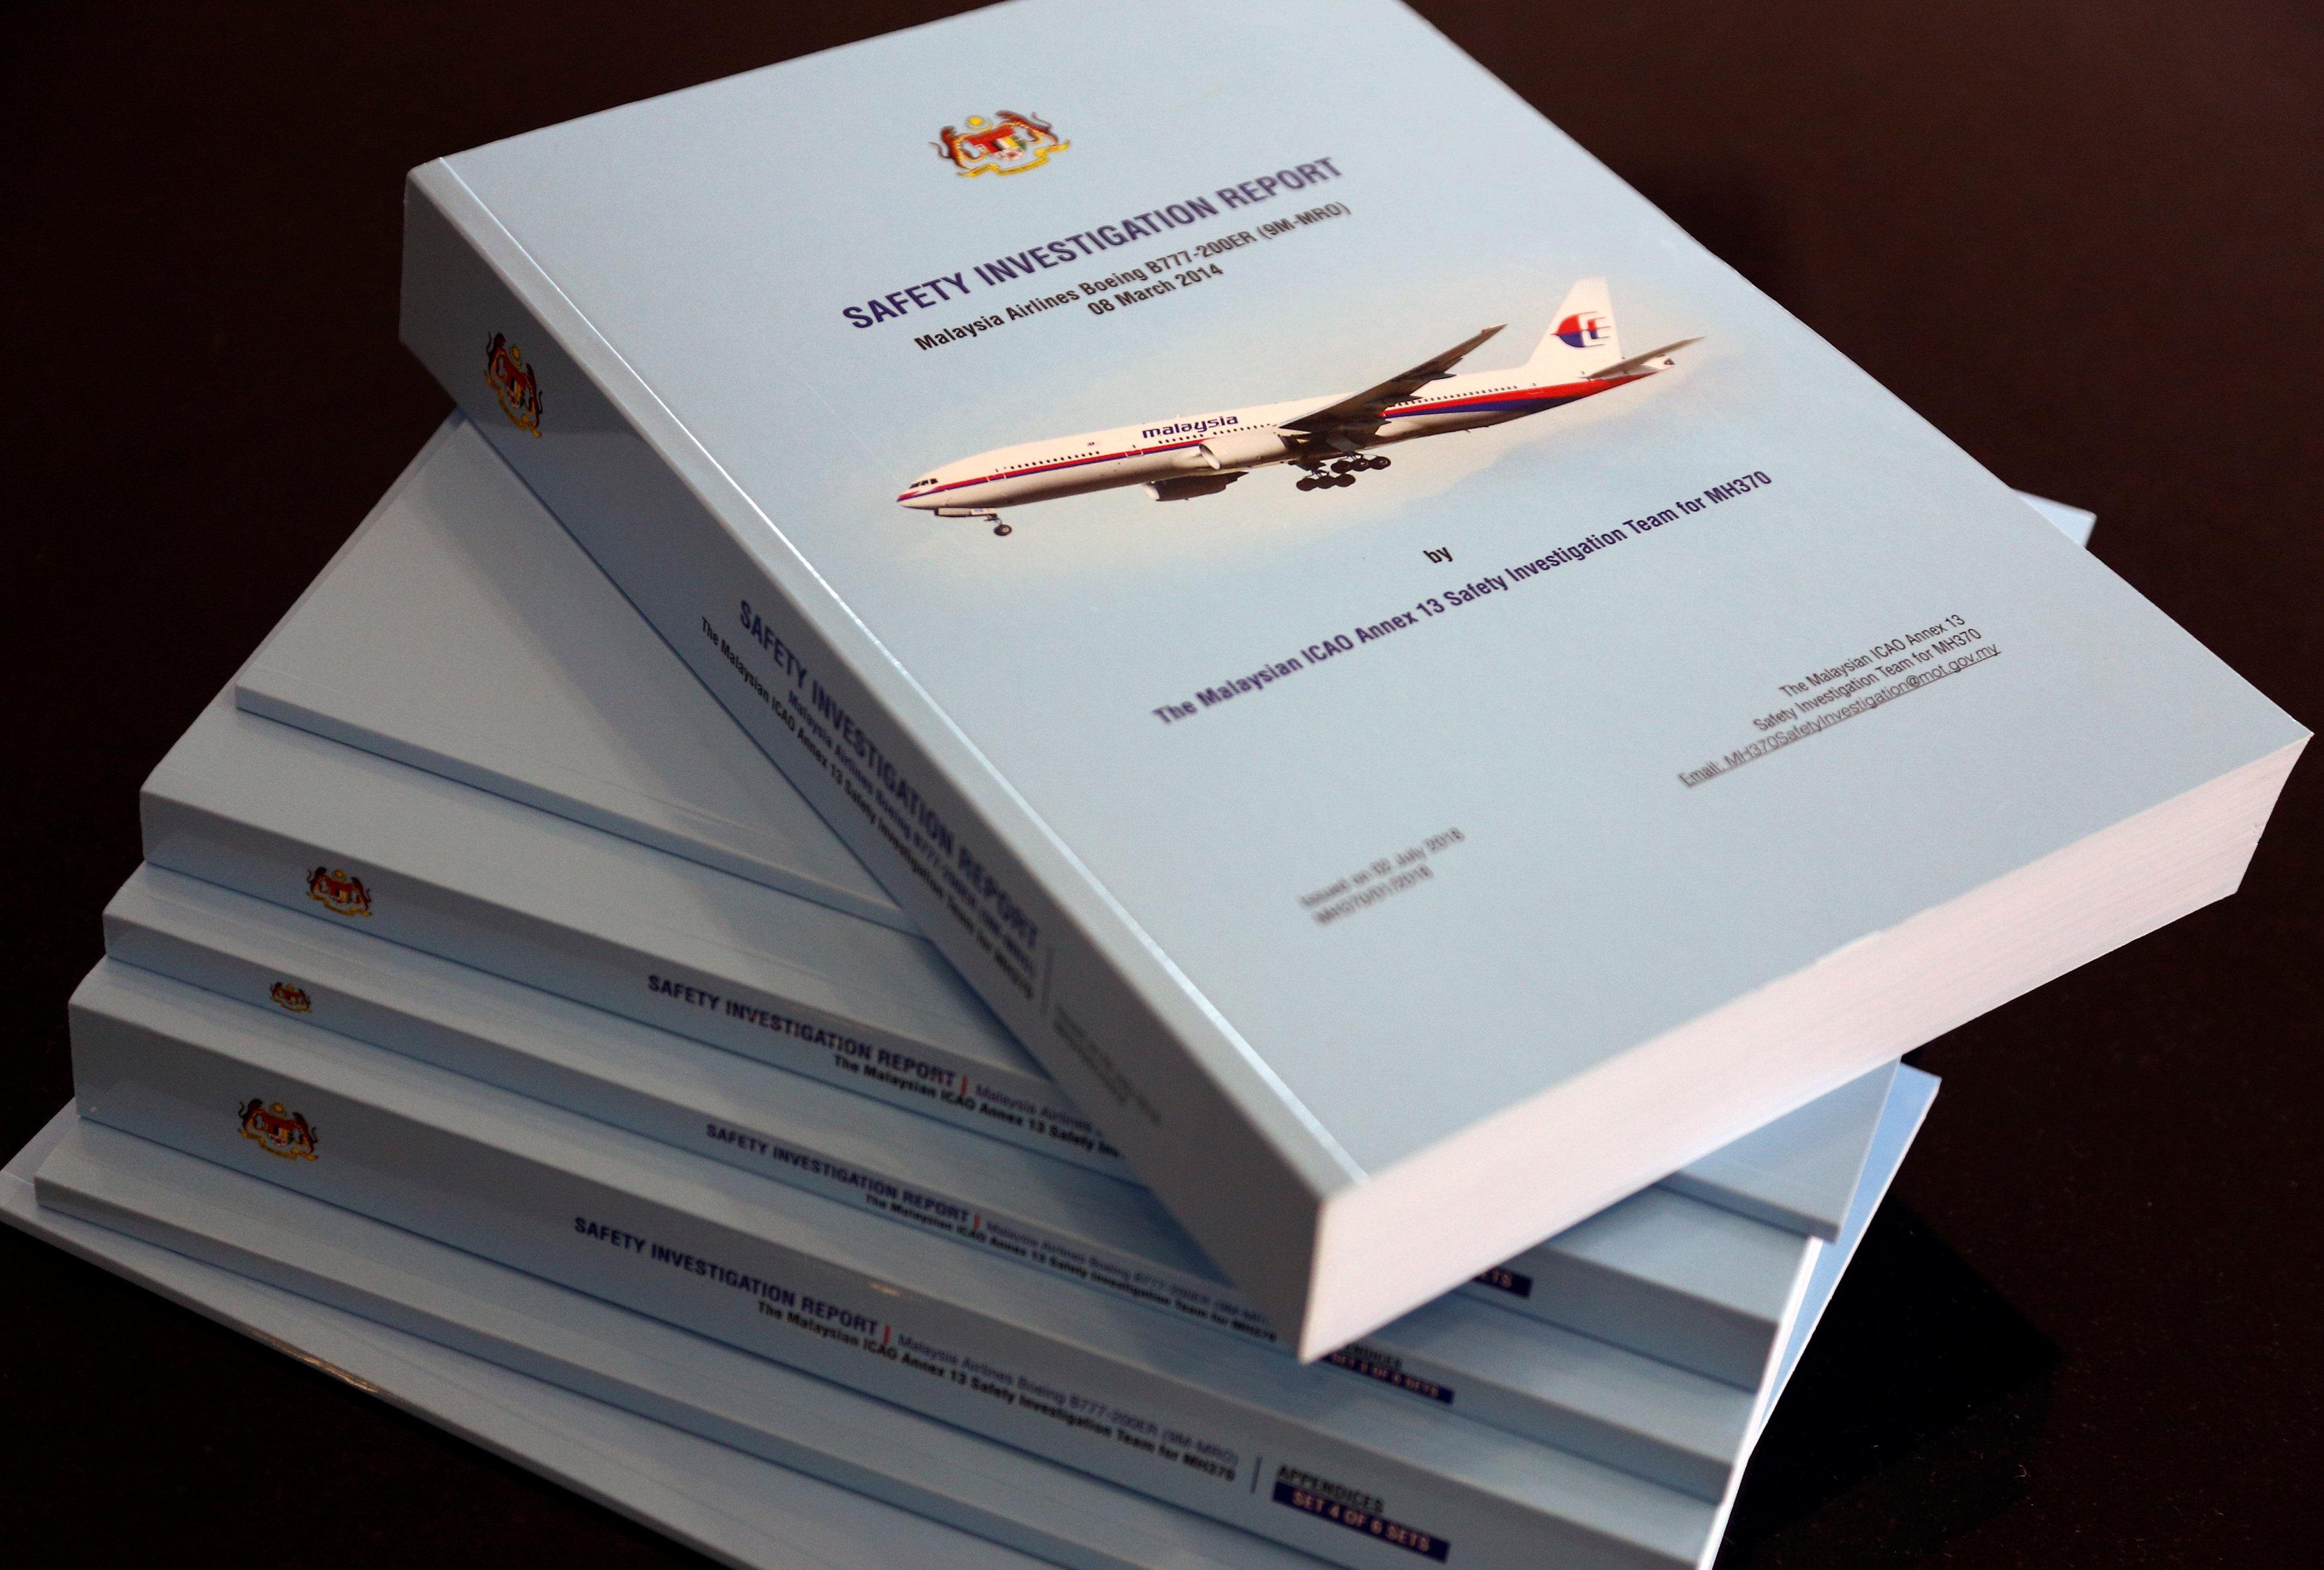 Родственники пассажиров обреченного рейса MH370 плачут, когда они читают отчет о катастрофе